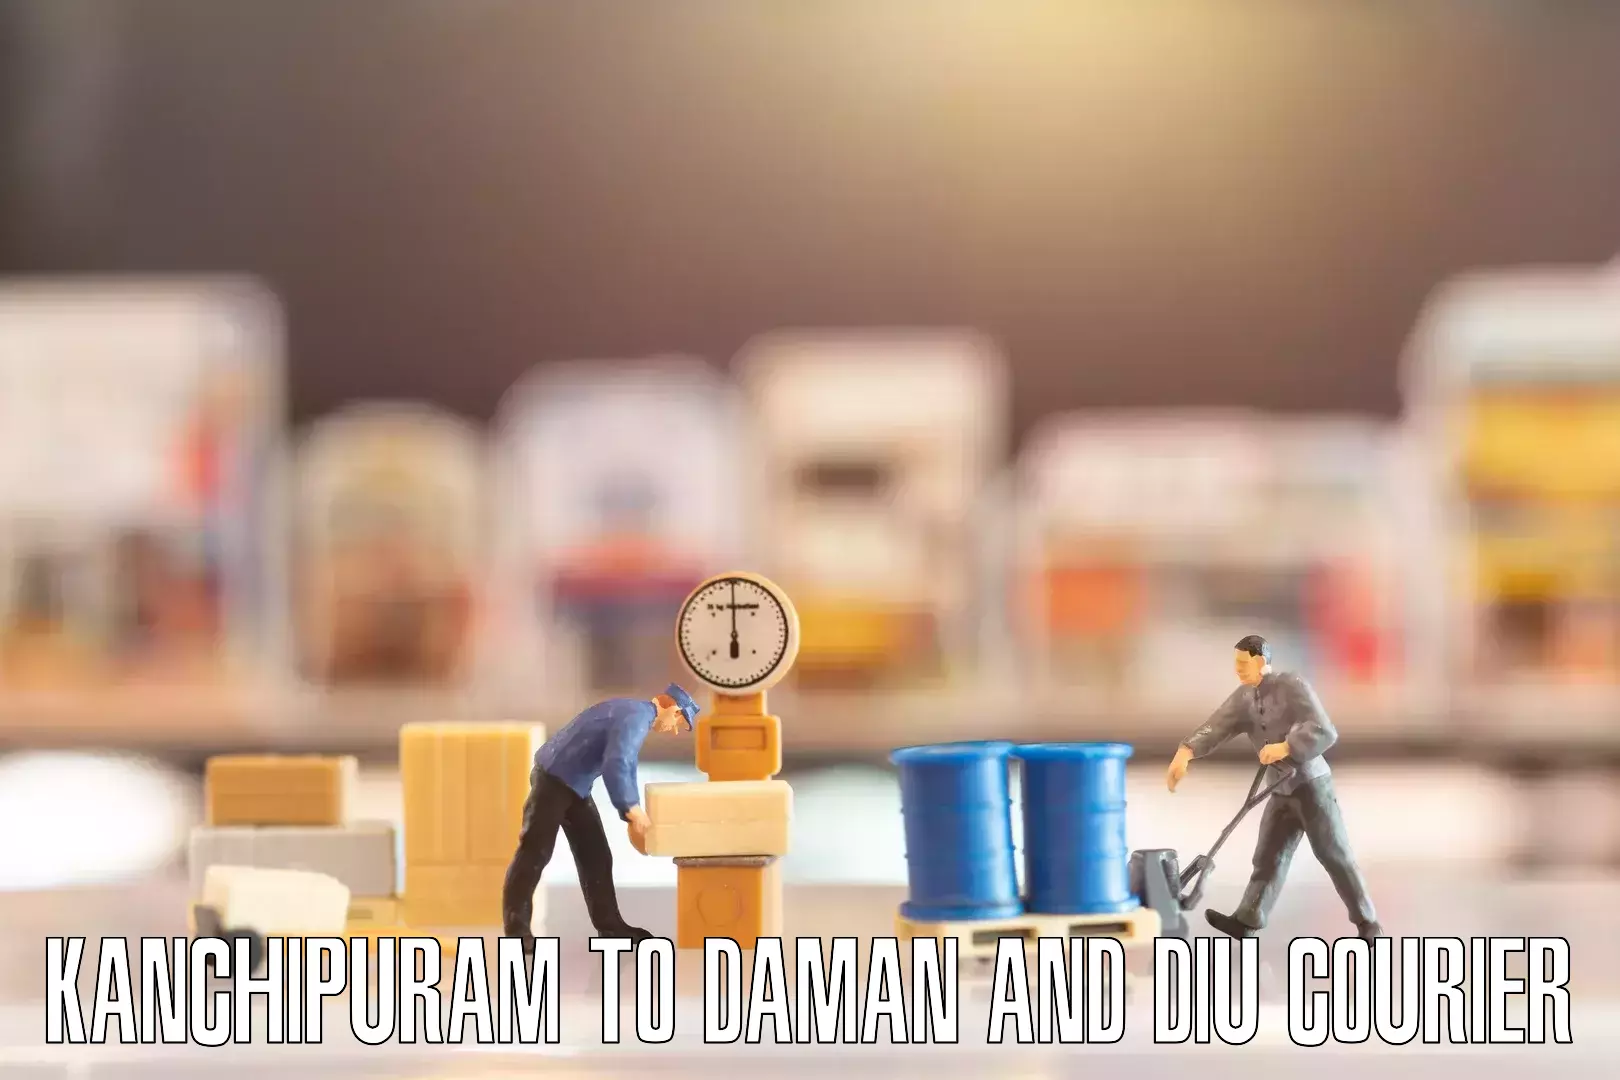 Professional furniture movers in Kanchipuram to Daman